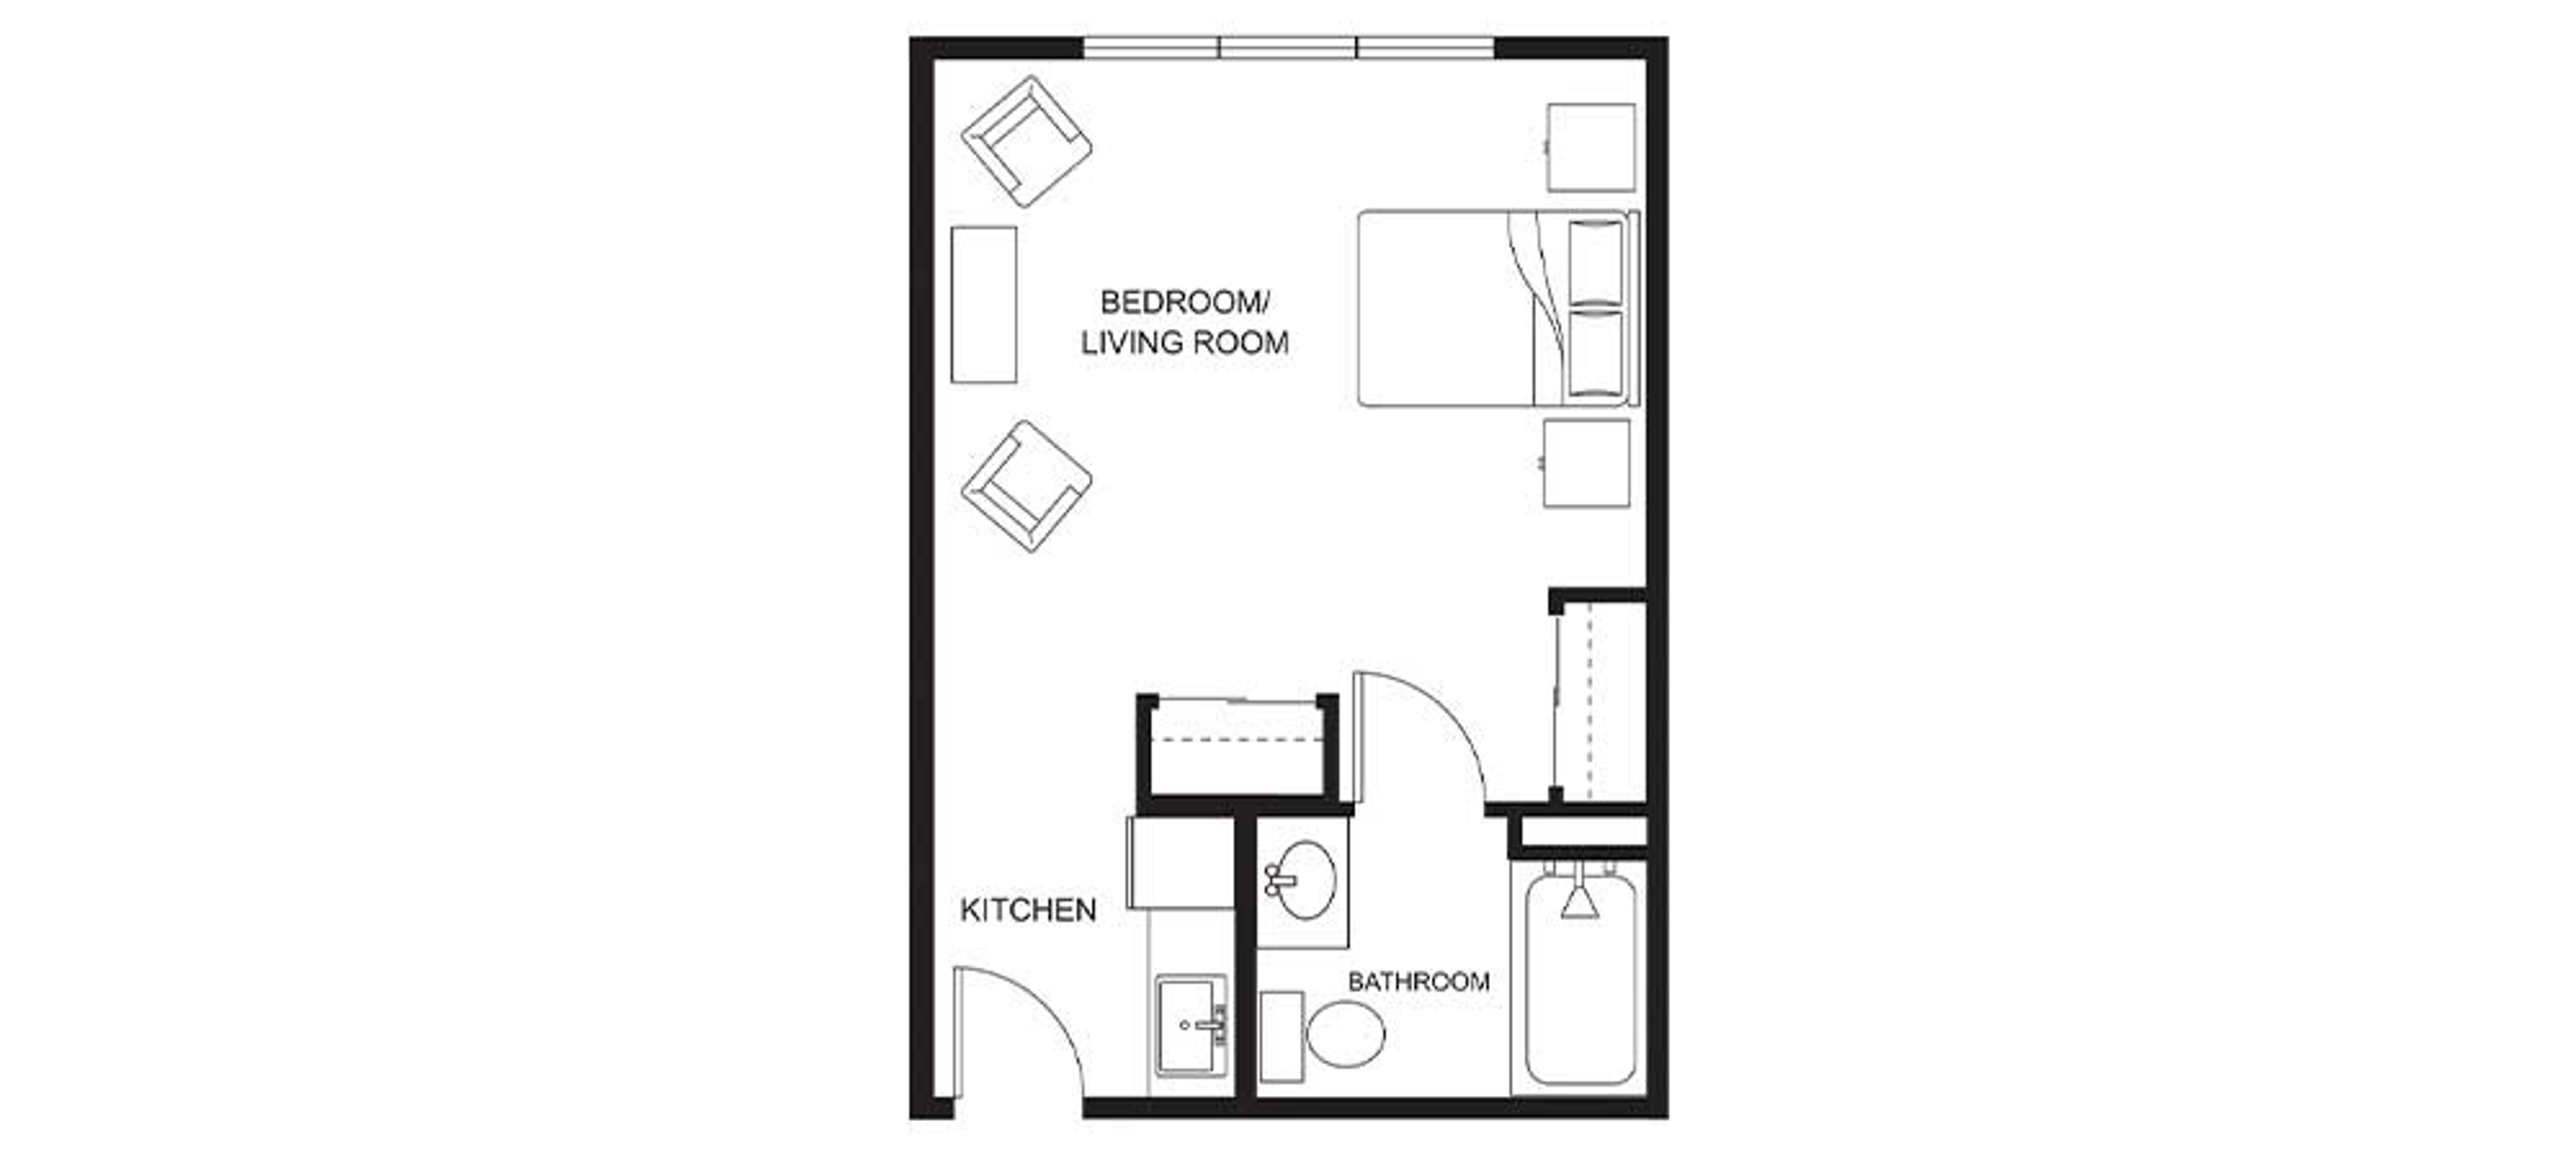 Floorplan - Clearwater Springs - Studio 425 sqft Assisted Living